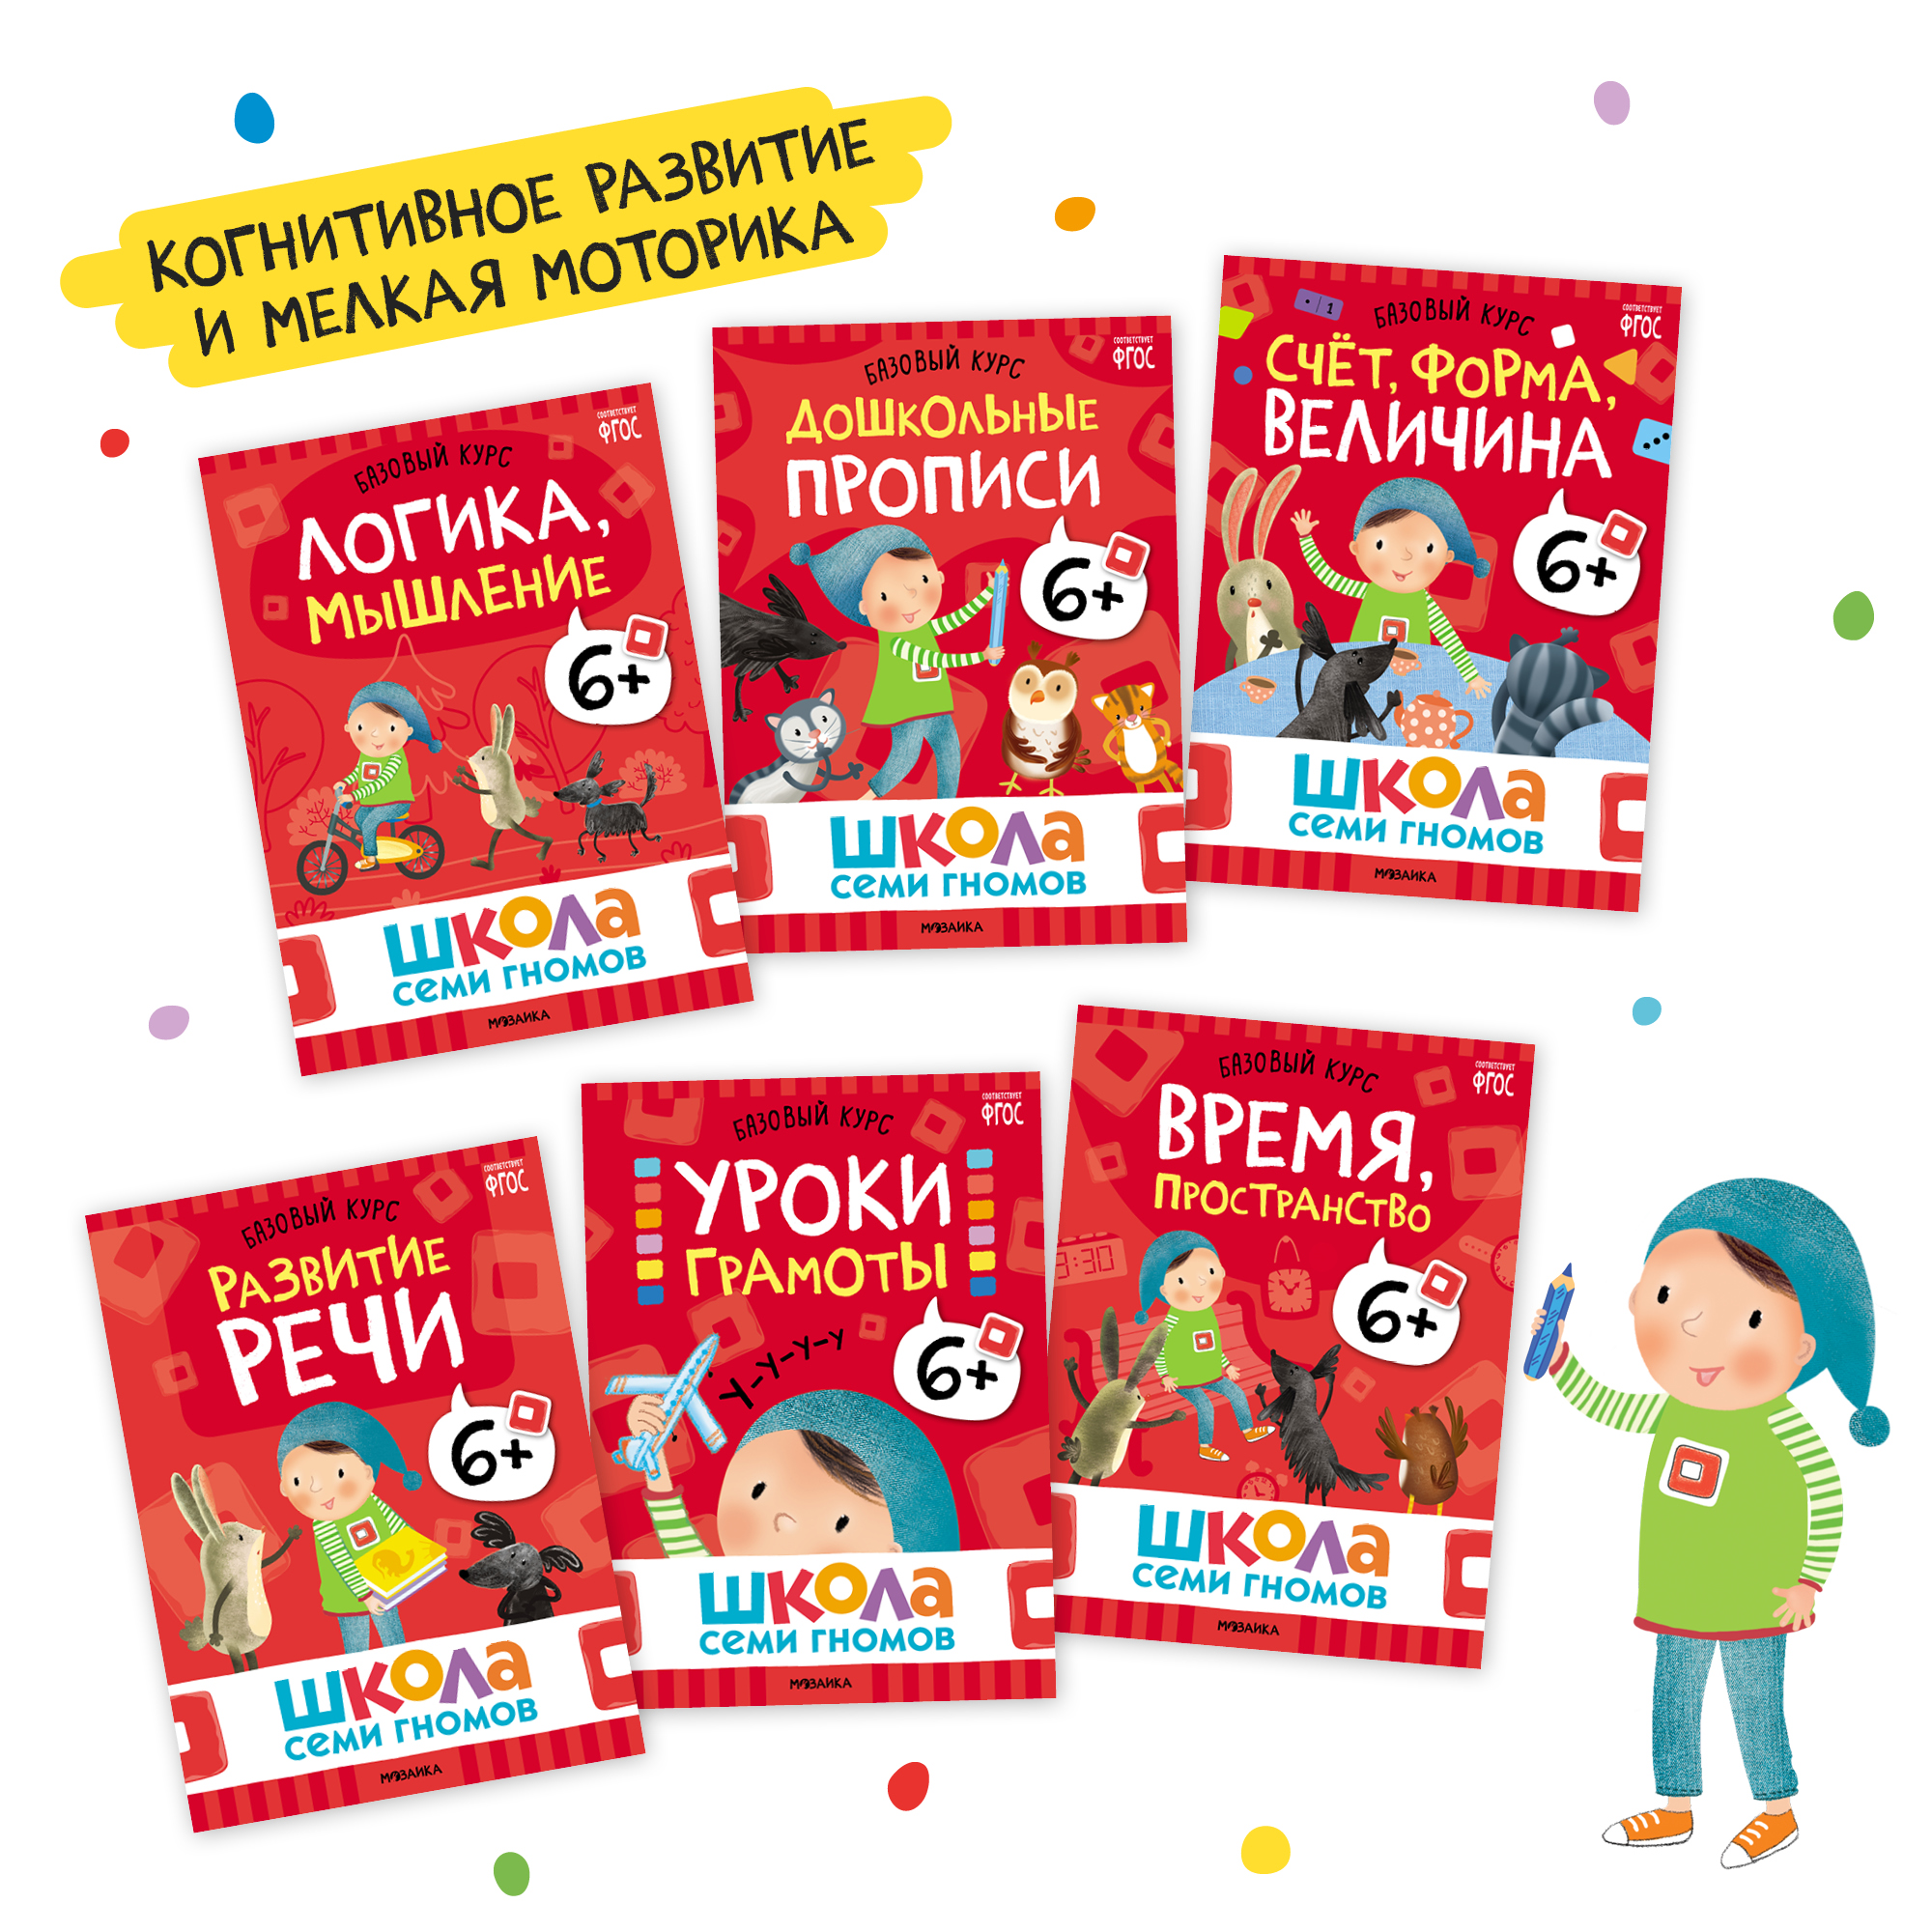 Комплект книг Базовый курс Школа Семи Гномов 6+ (6 книг +развивающие игры для детей 6-7лет) - фото 3